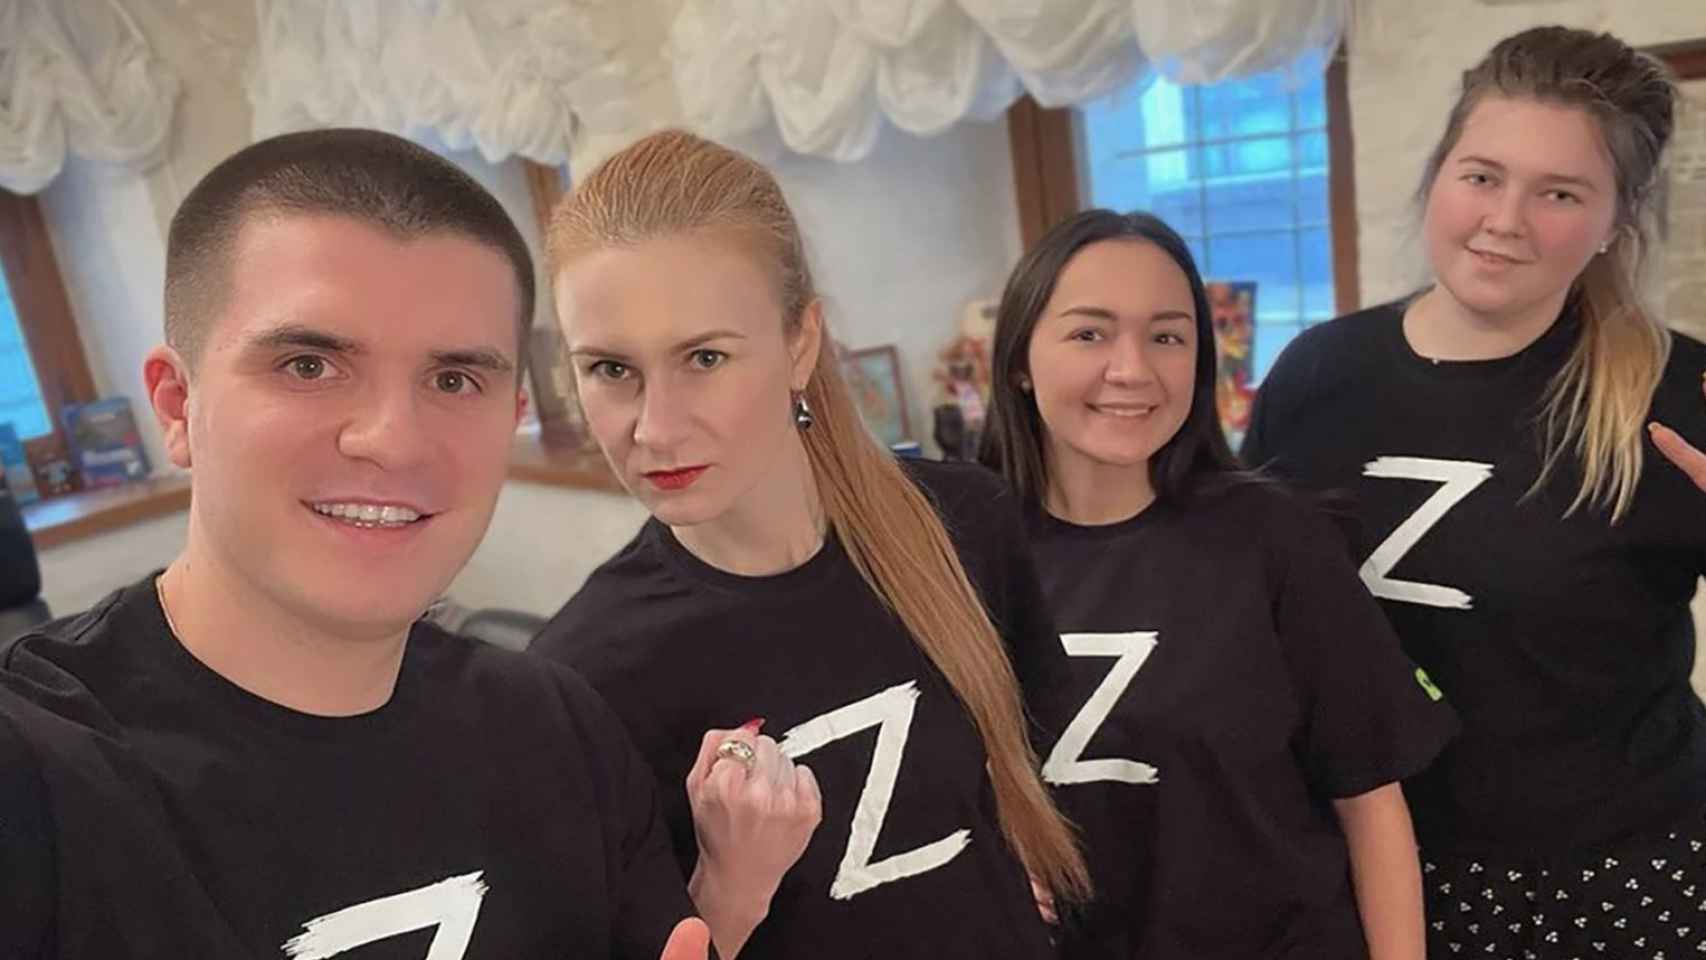 La diputada rusa Maria Butina posa junto a otros compañeros vistiendo una camiseta con la letra 'Z'.